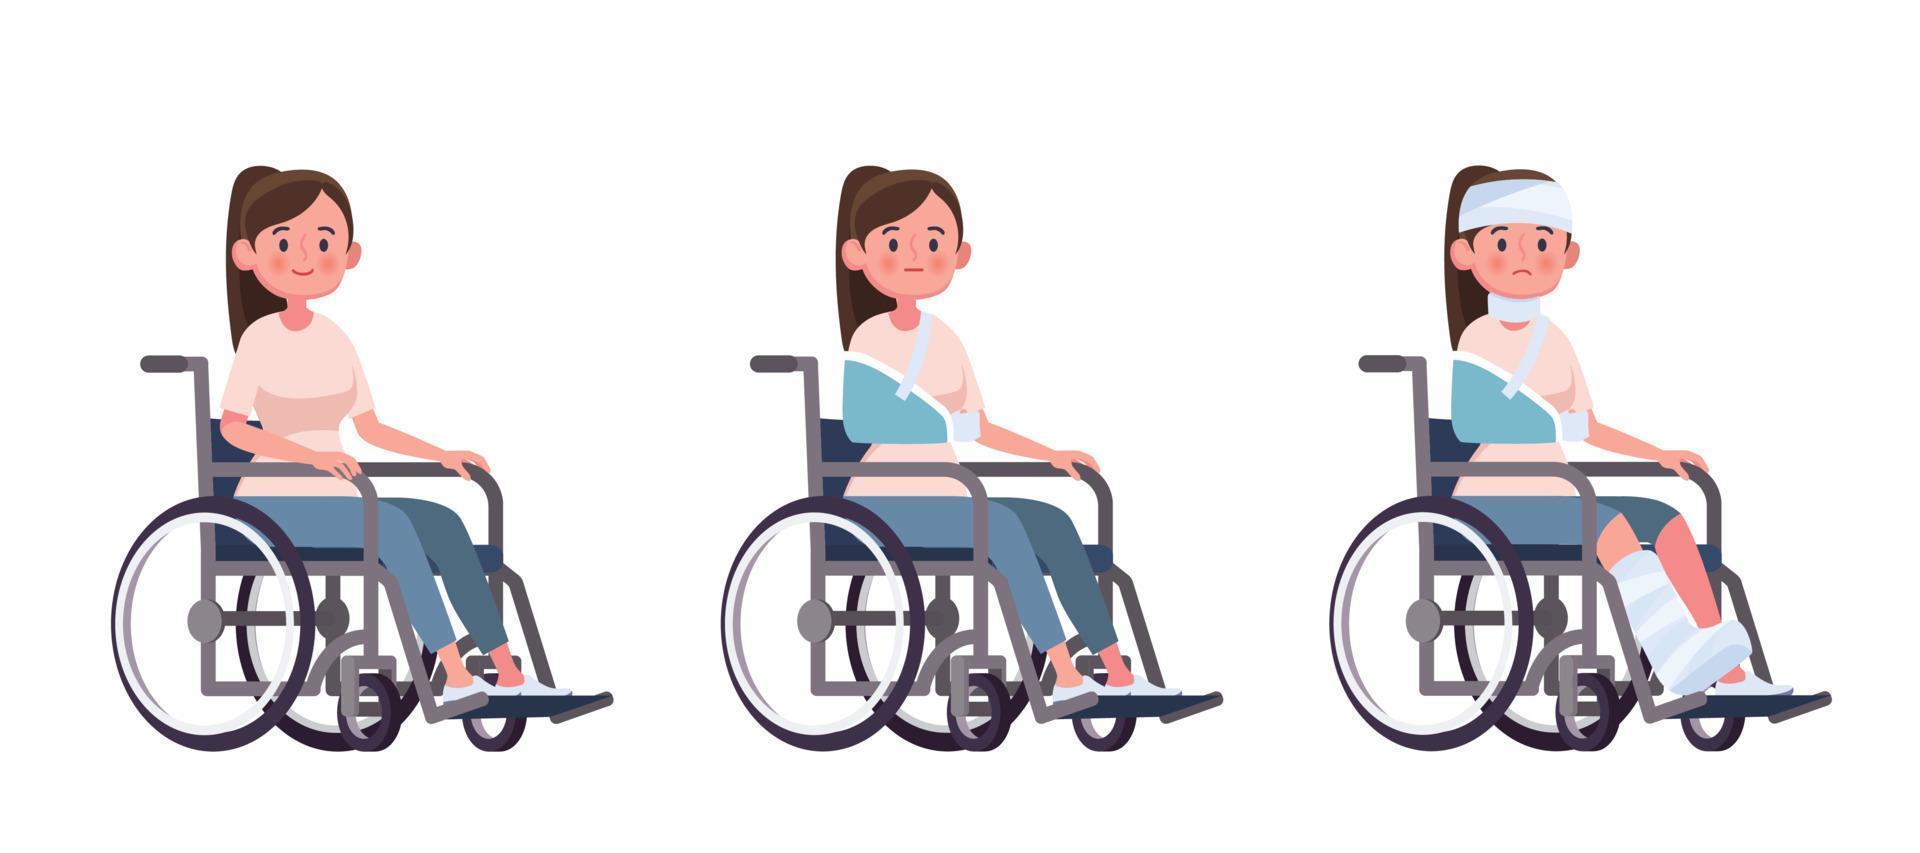 giovane donna su una sedia a rotelle set di cartoni animati vettoriali concetto di recupero di lesioni e disabilità dall'incidente